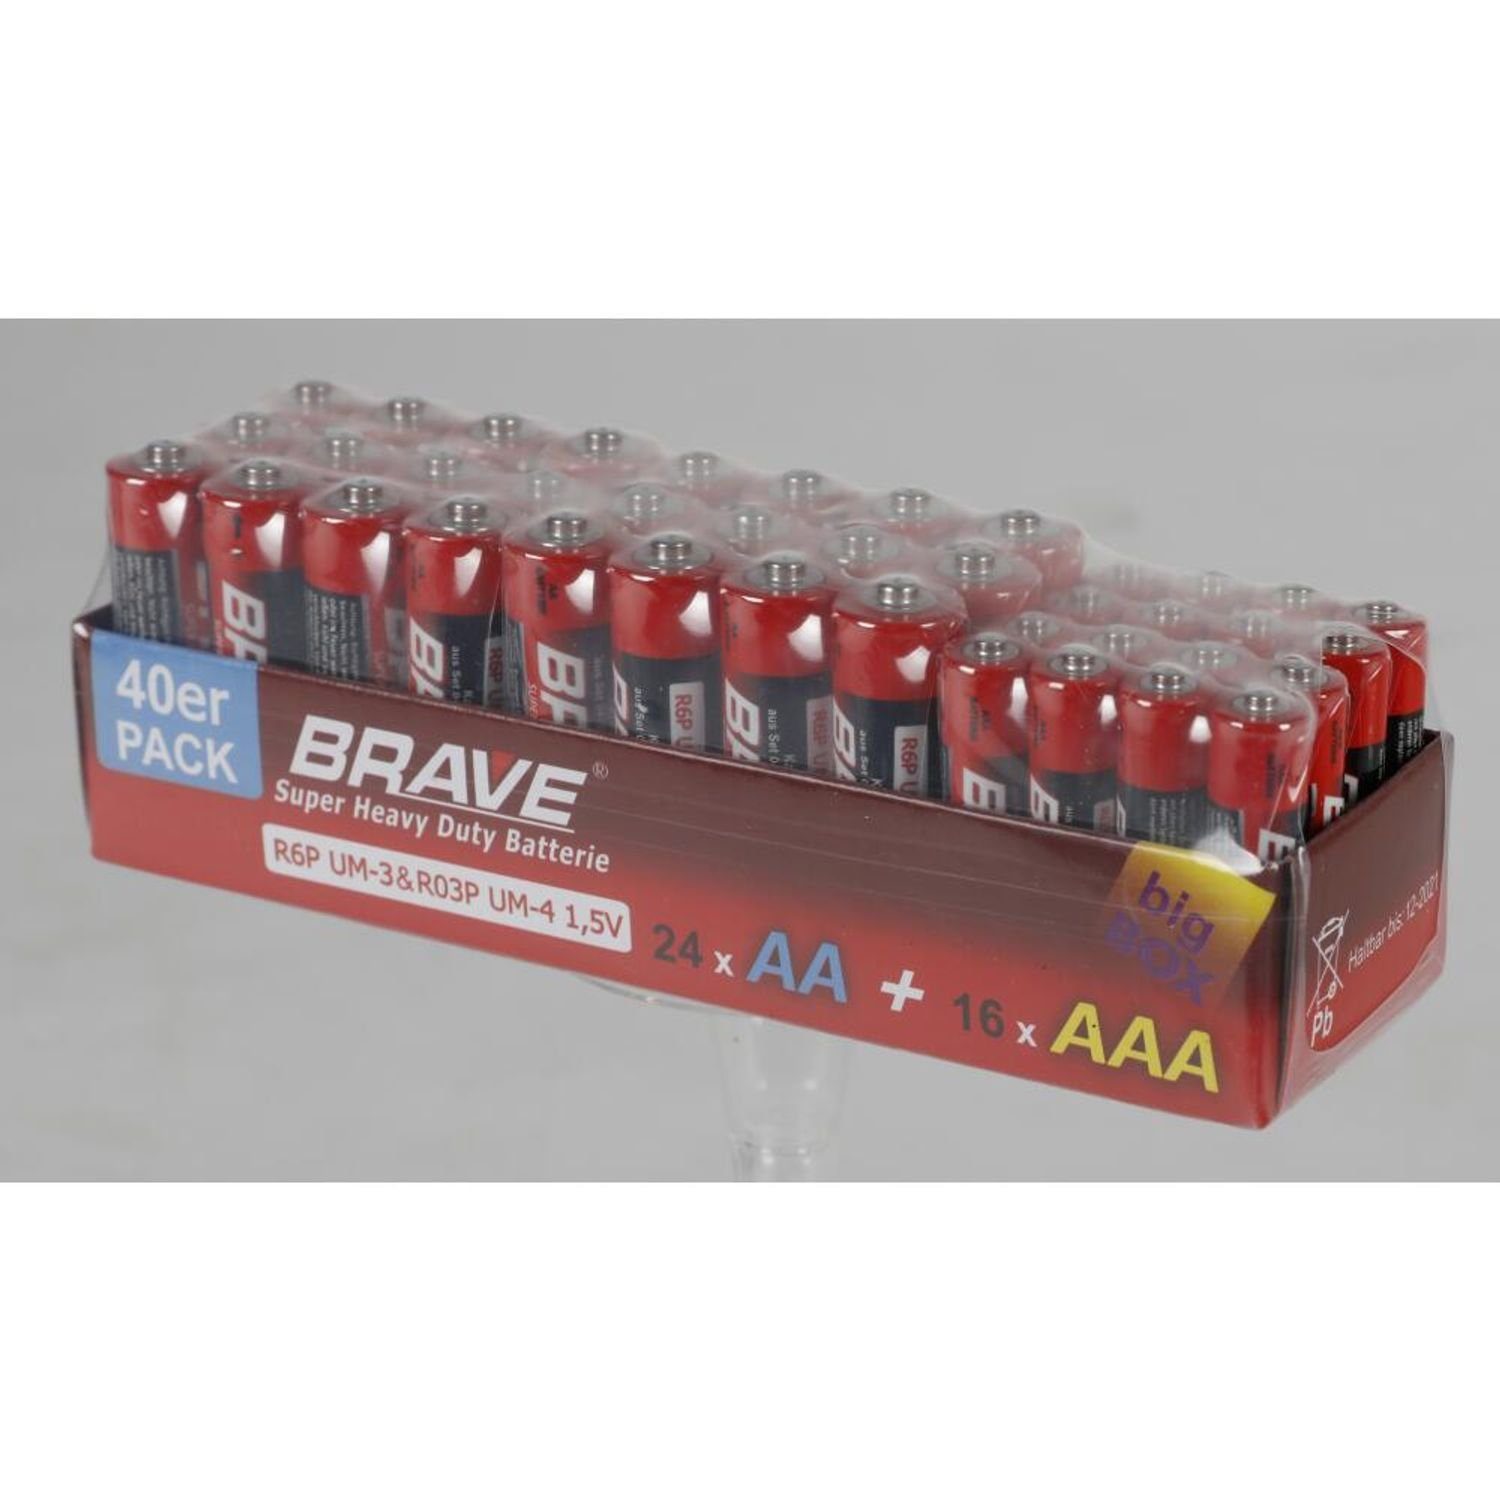 Brave & Batterie, Großpackung St) Stück 40er-Pack (960 AAA 960 BURI Batterien 24x AA